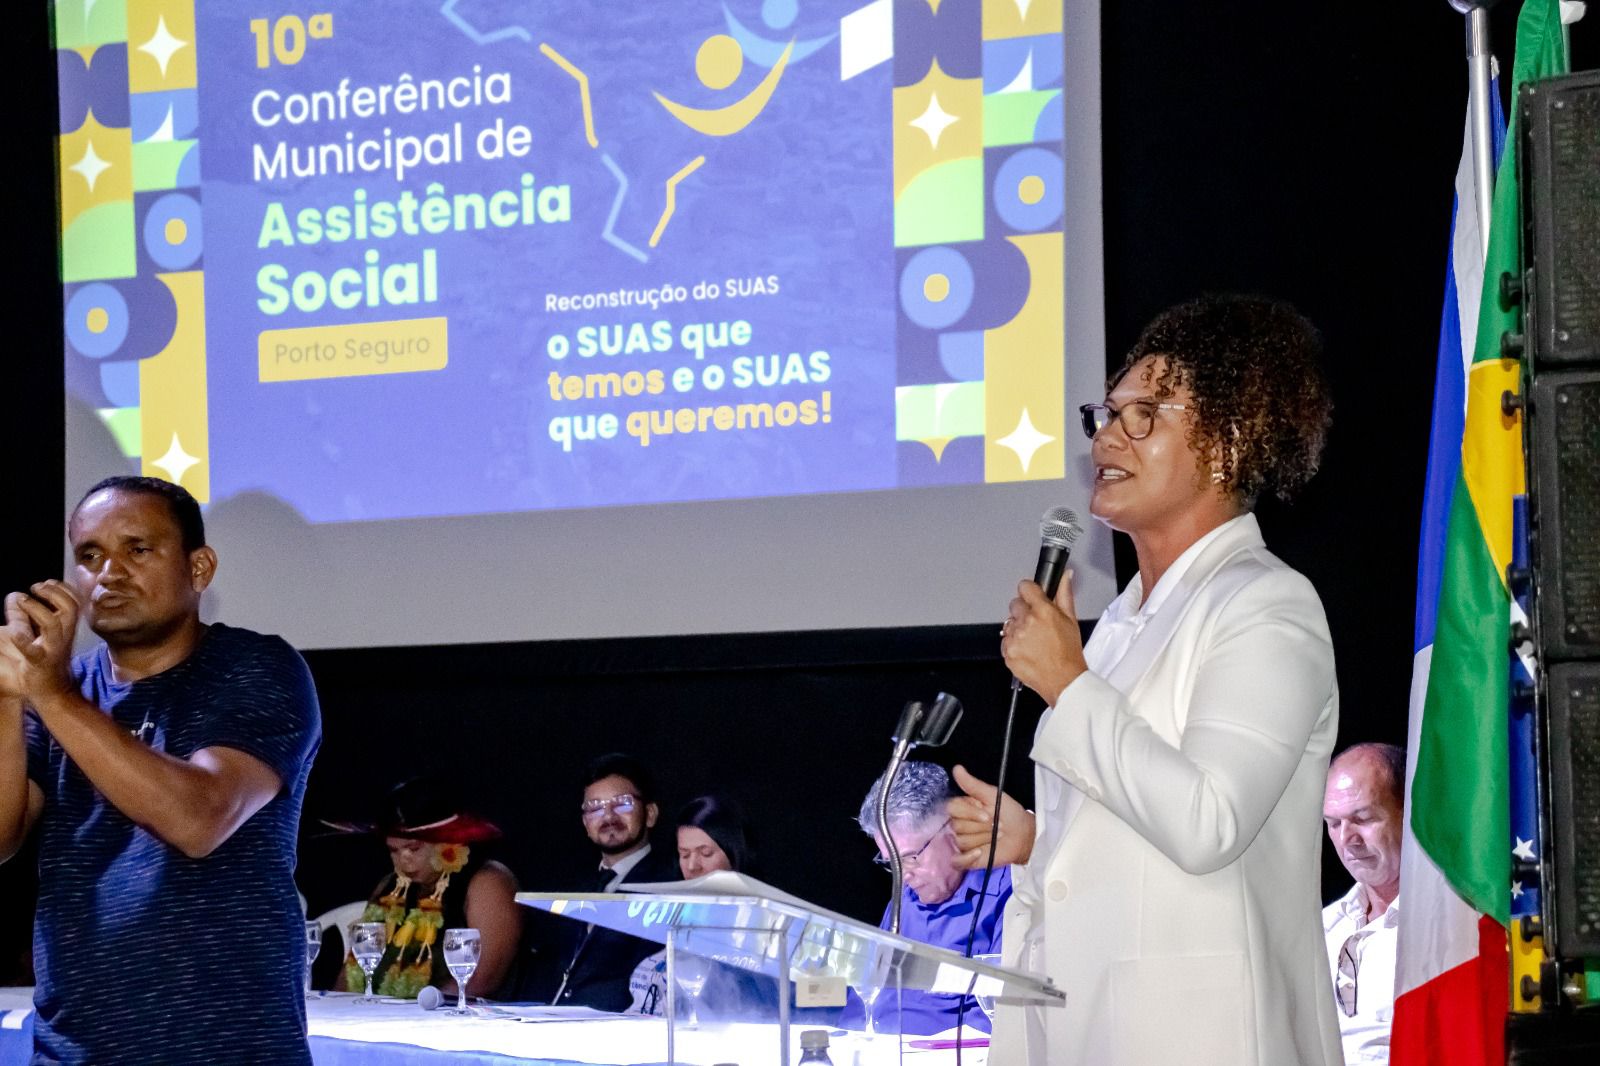 Conferência Municipal de Assistência Social reúne mais de 500 participantes 17